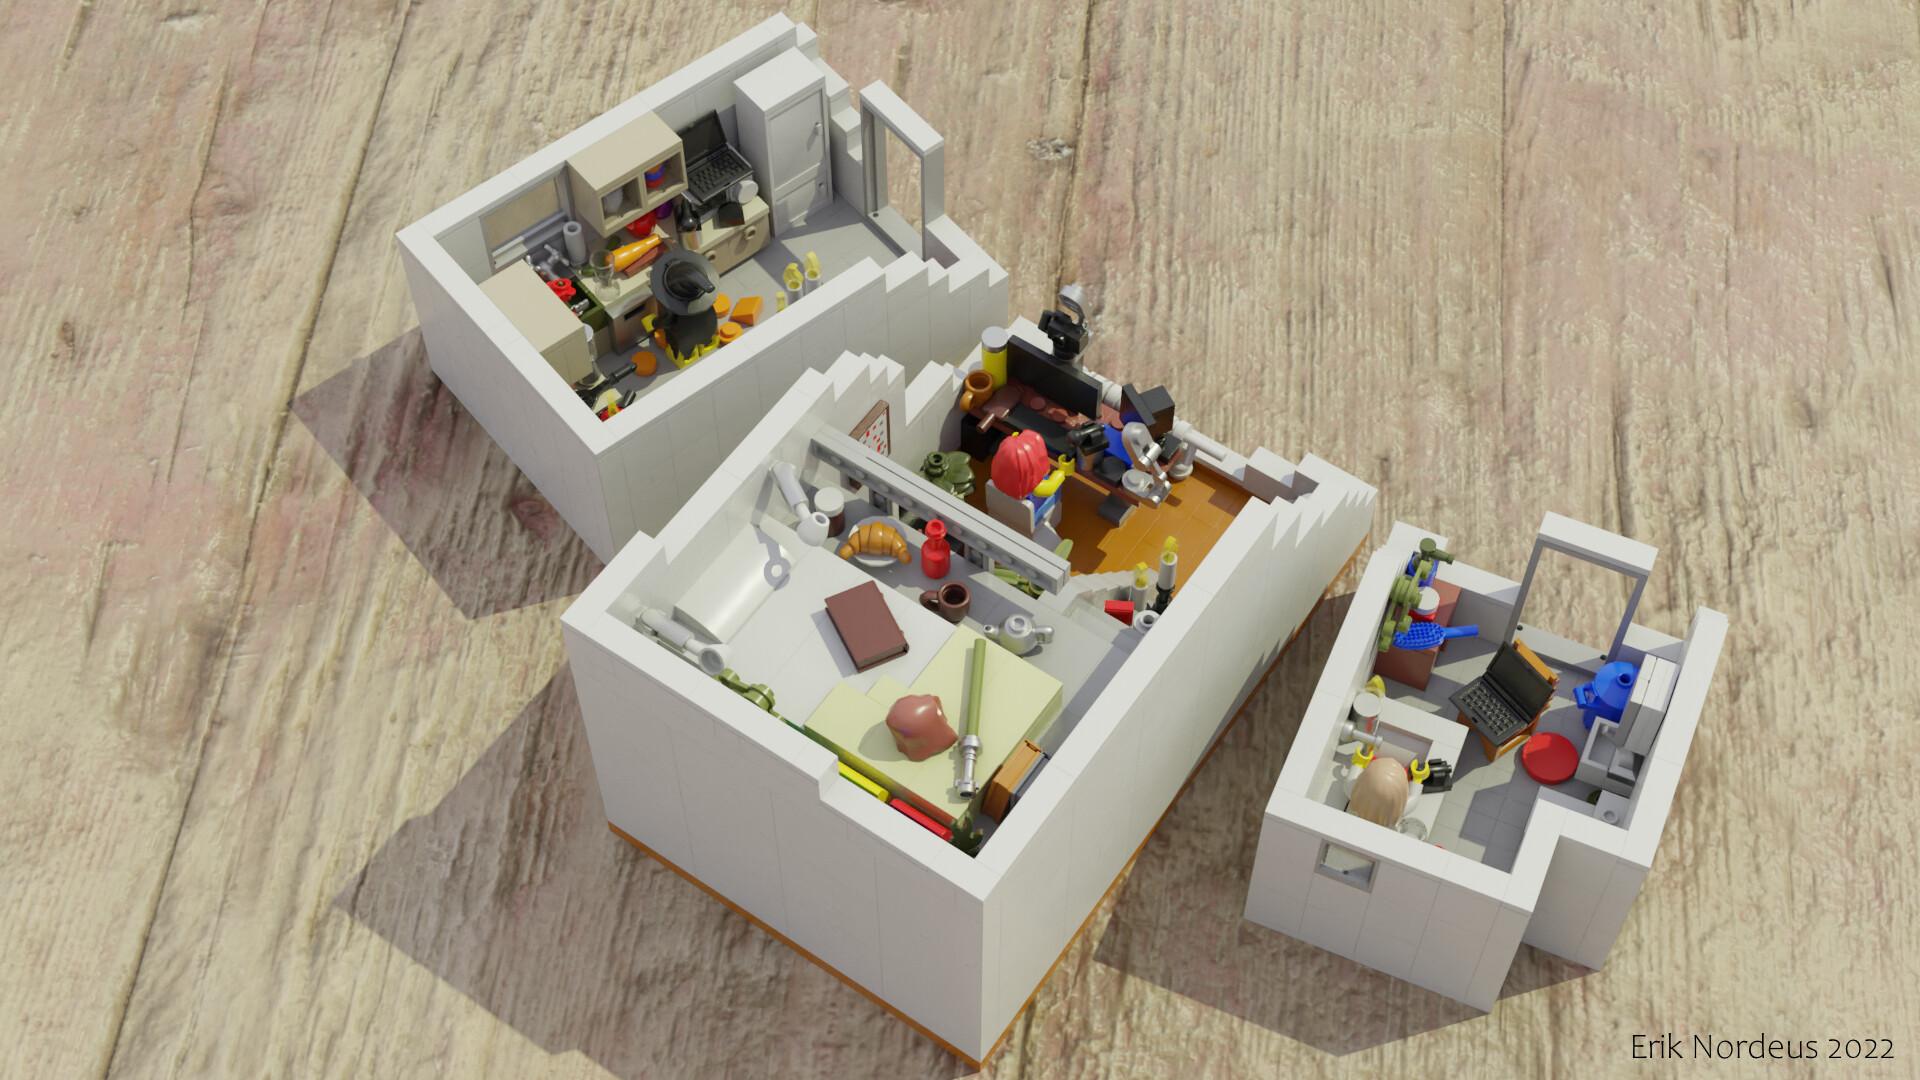 TAYLOR SWIFT HAS TAKEN OVER LEGO IDEAS!!!!